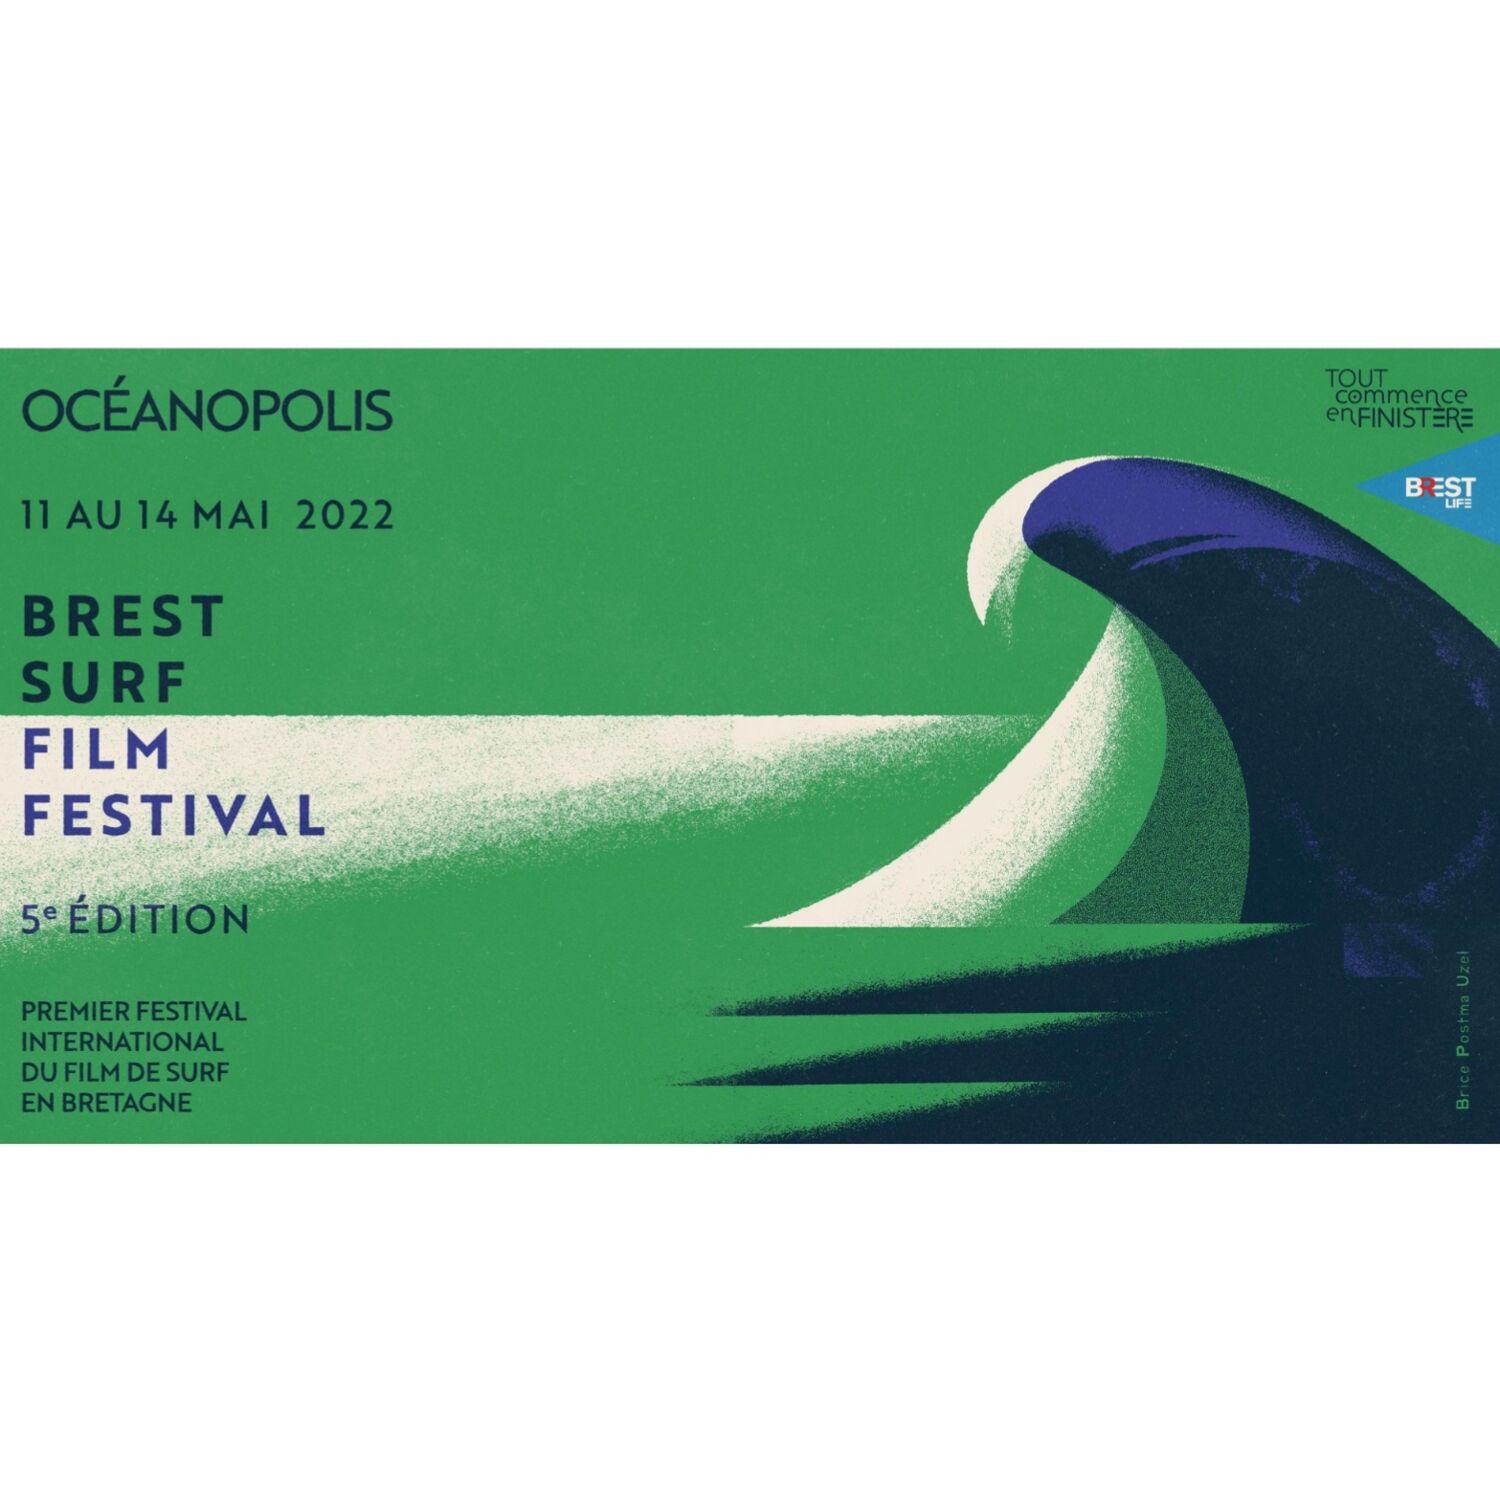 C'est parti pour le Brest Surf Film Festival